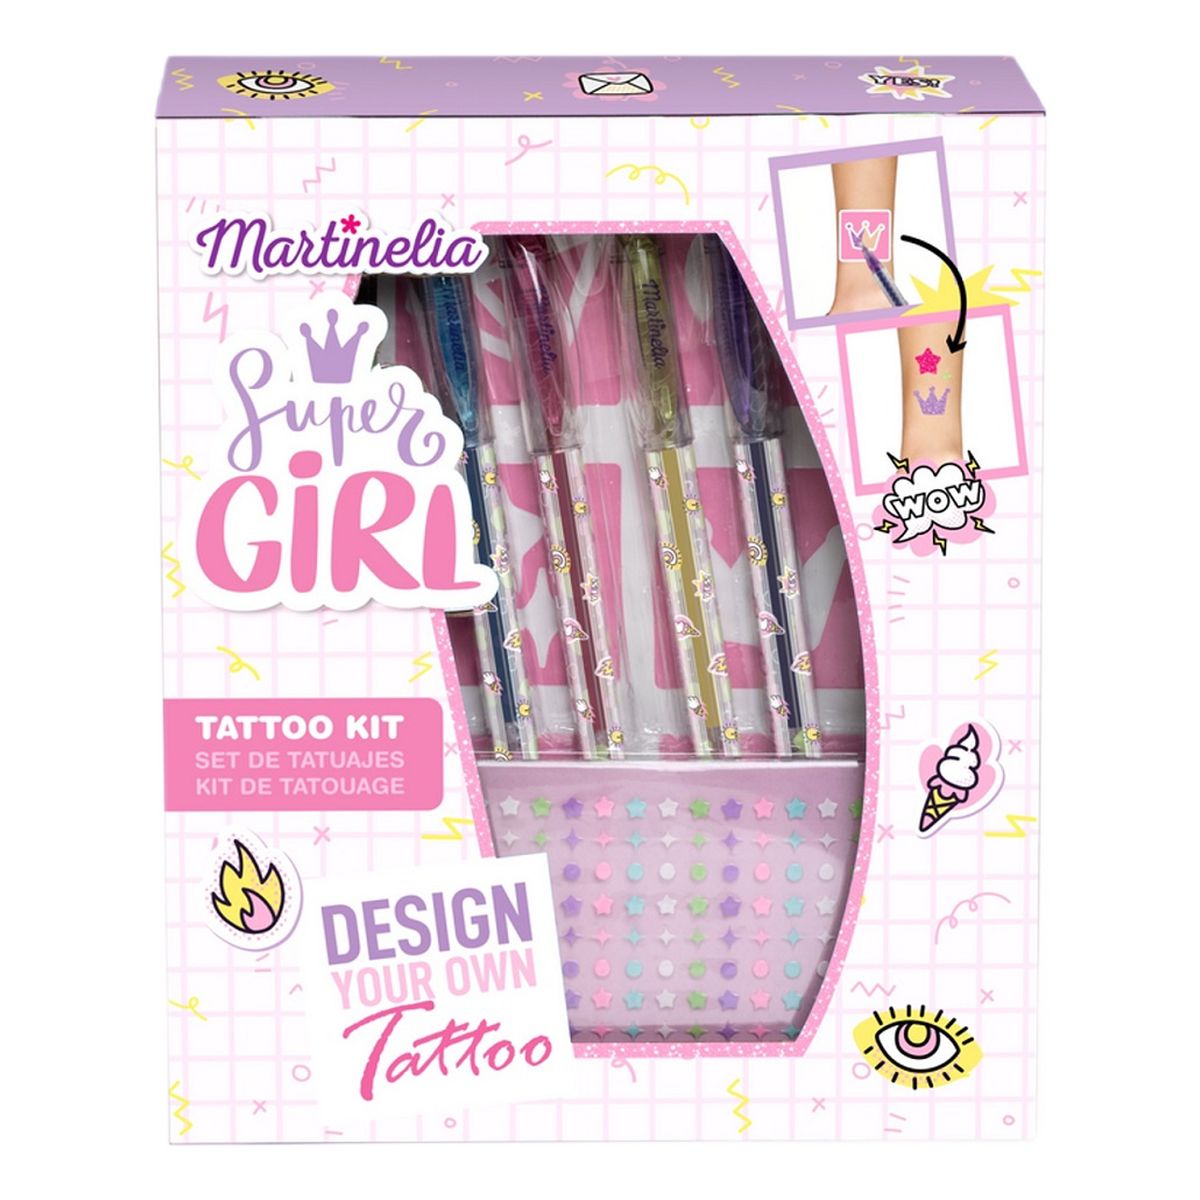 Martinelia Super Girl Body Art Tattoo Zestaw długopisy do tatuażu 4szt + naklejki i szablony